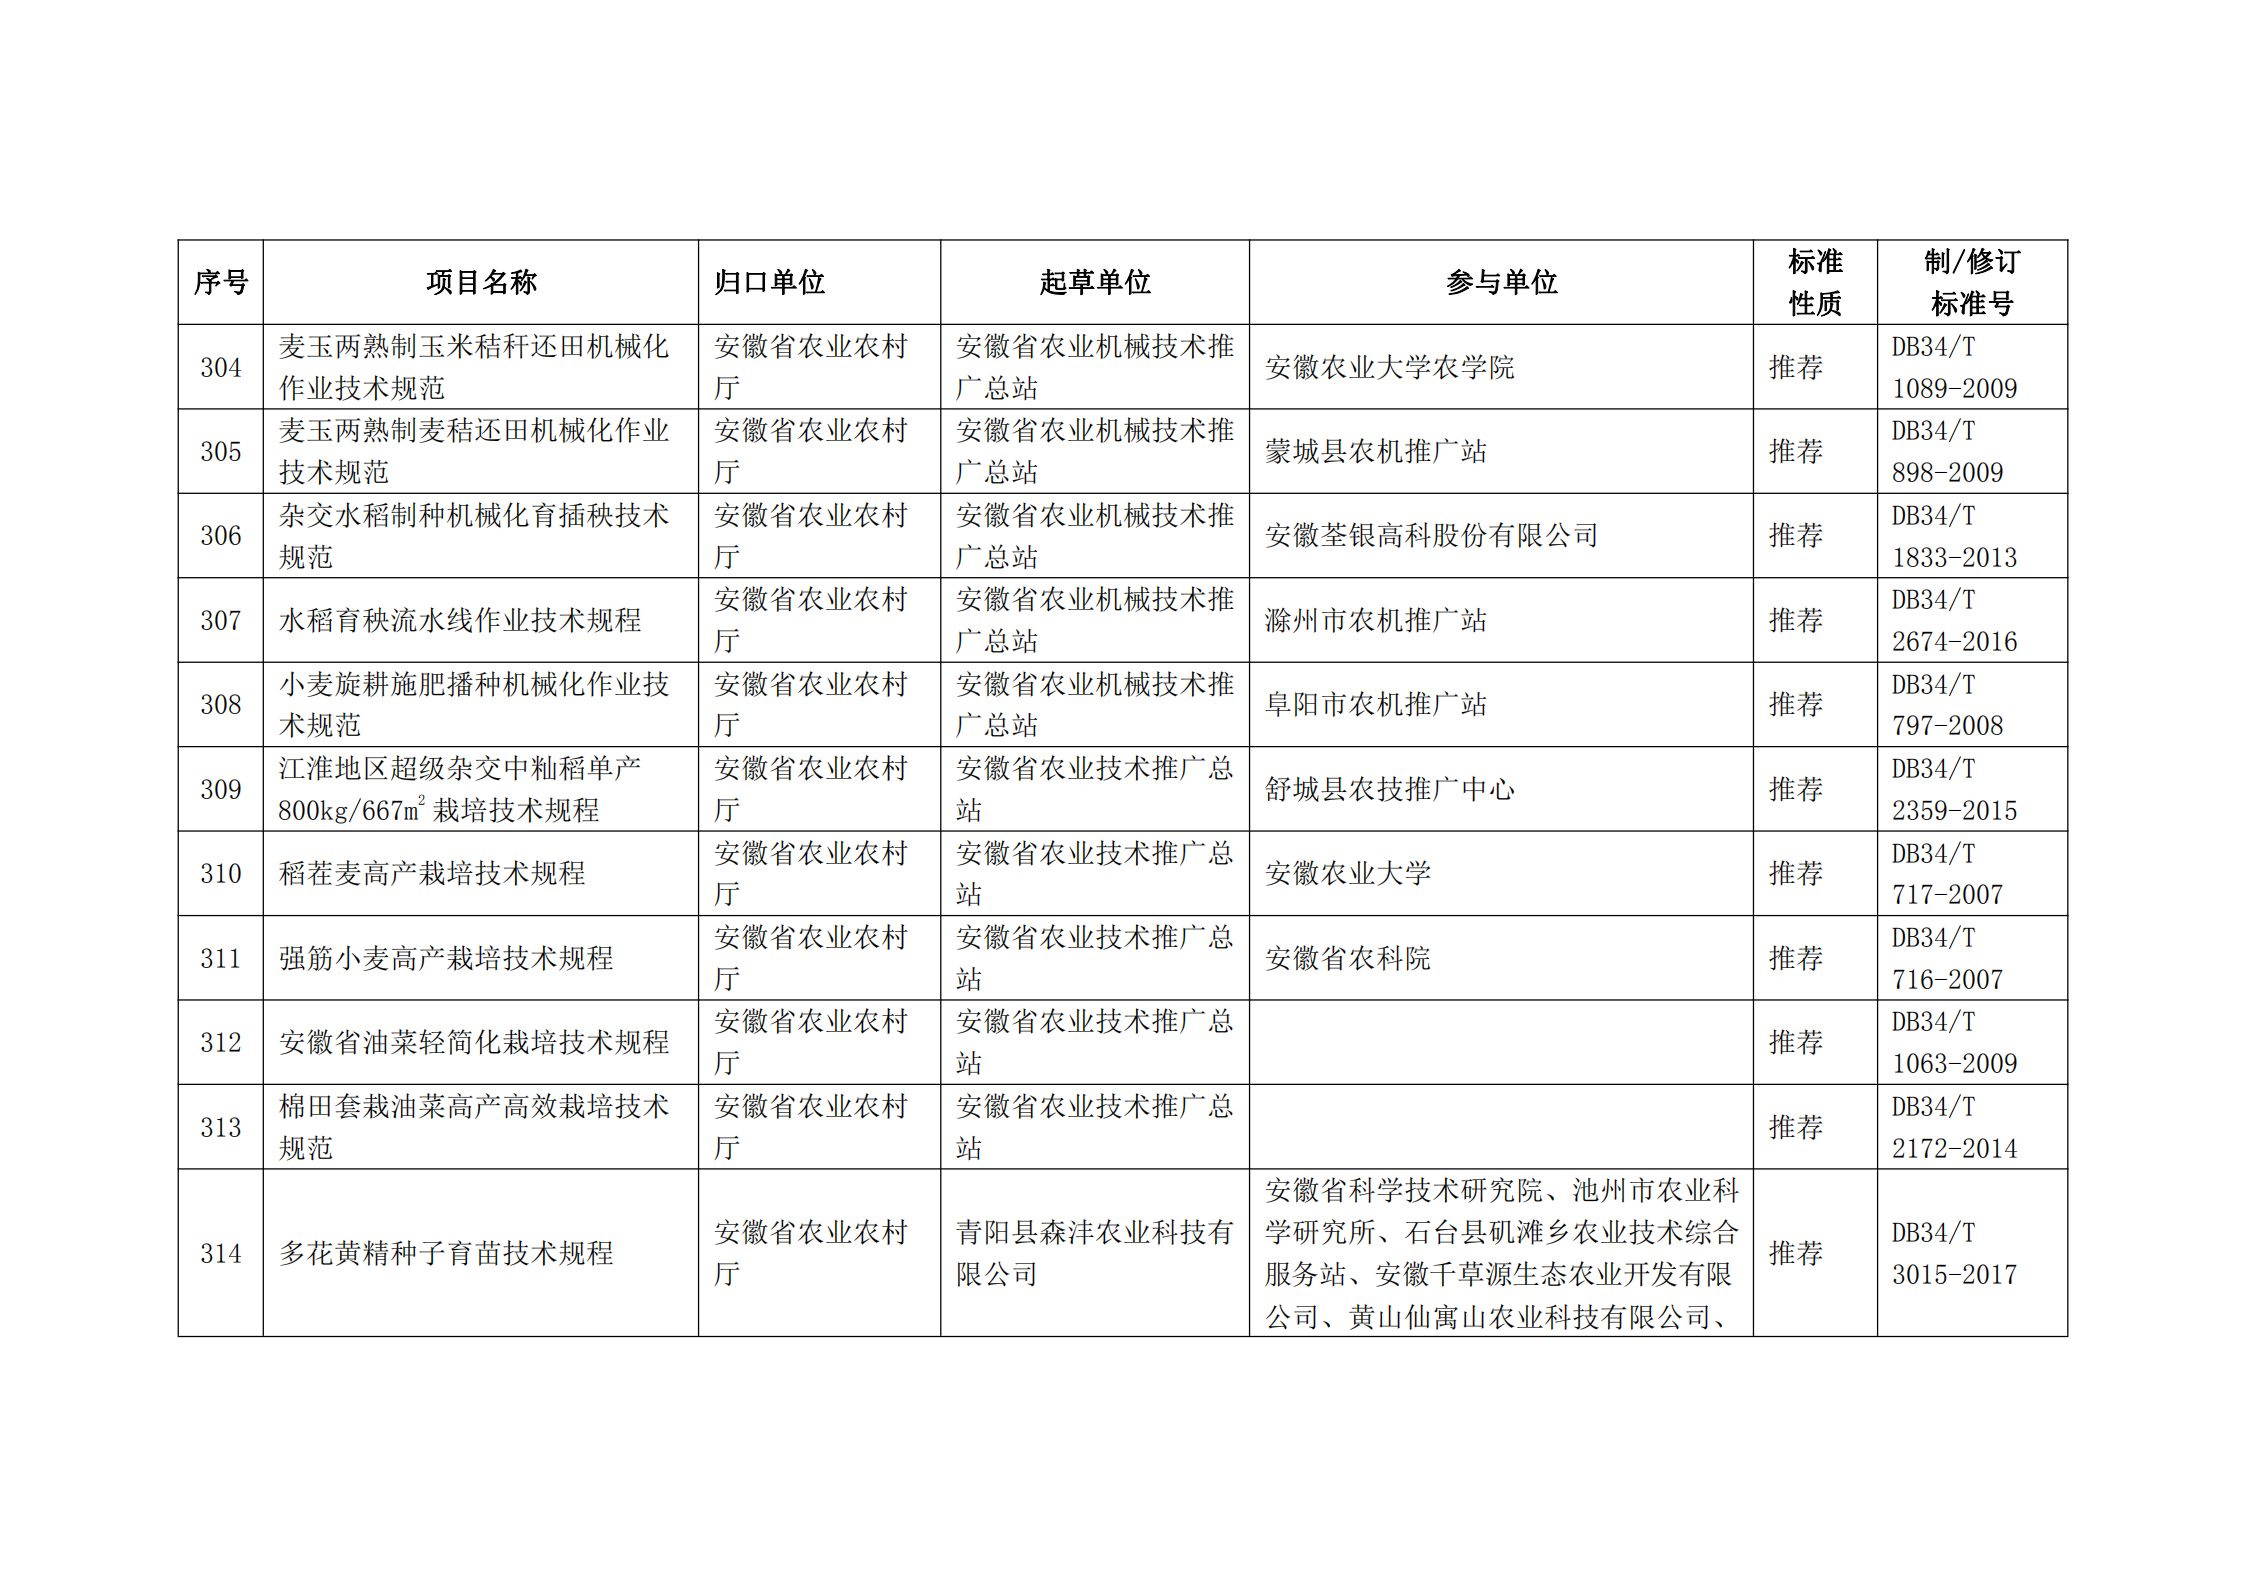 2020 年第二批安徽省地方标准制、修订计划项目汇总表(图34)